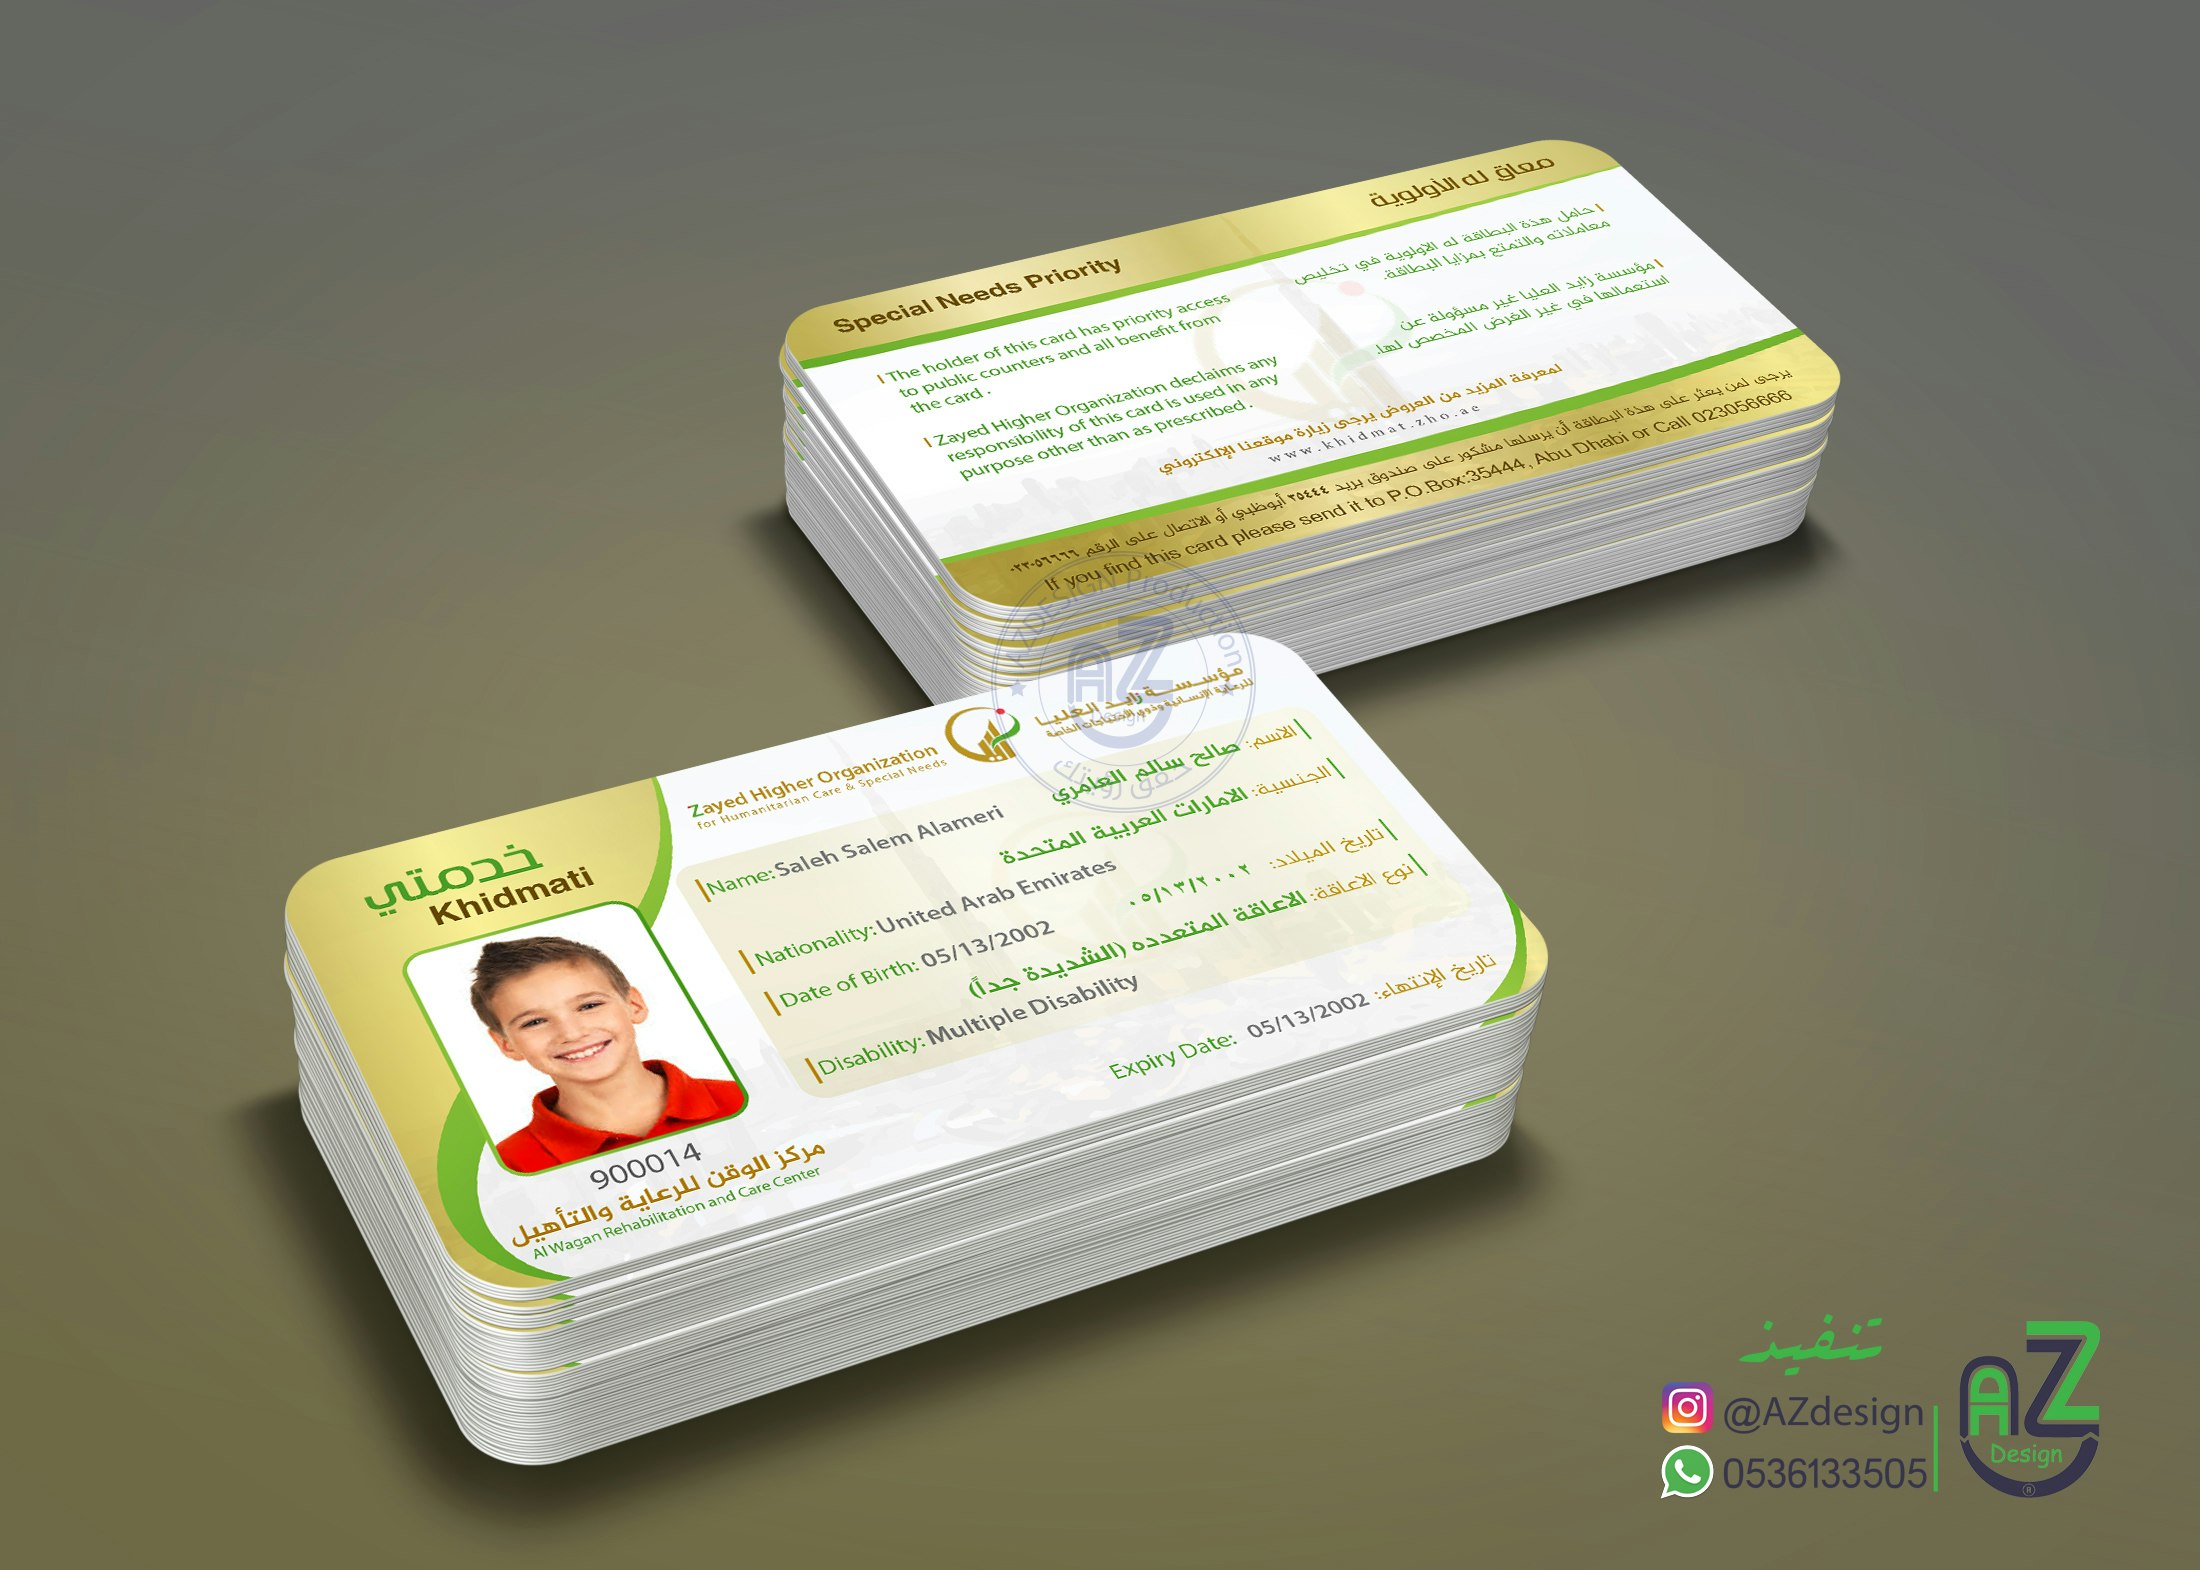 تصميم بطاقة عضوية لمؤسسة الشيخ زايد